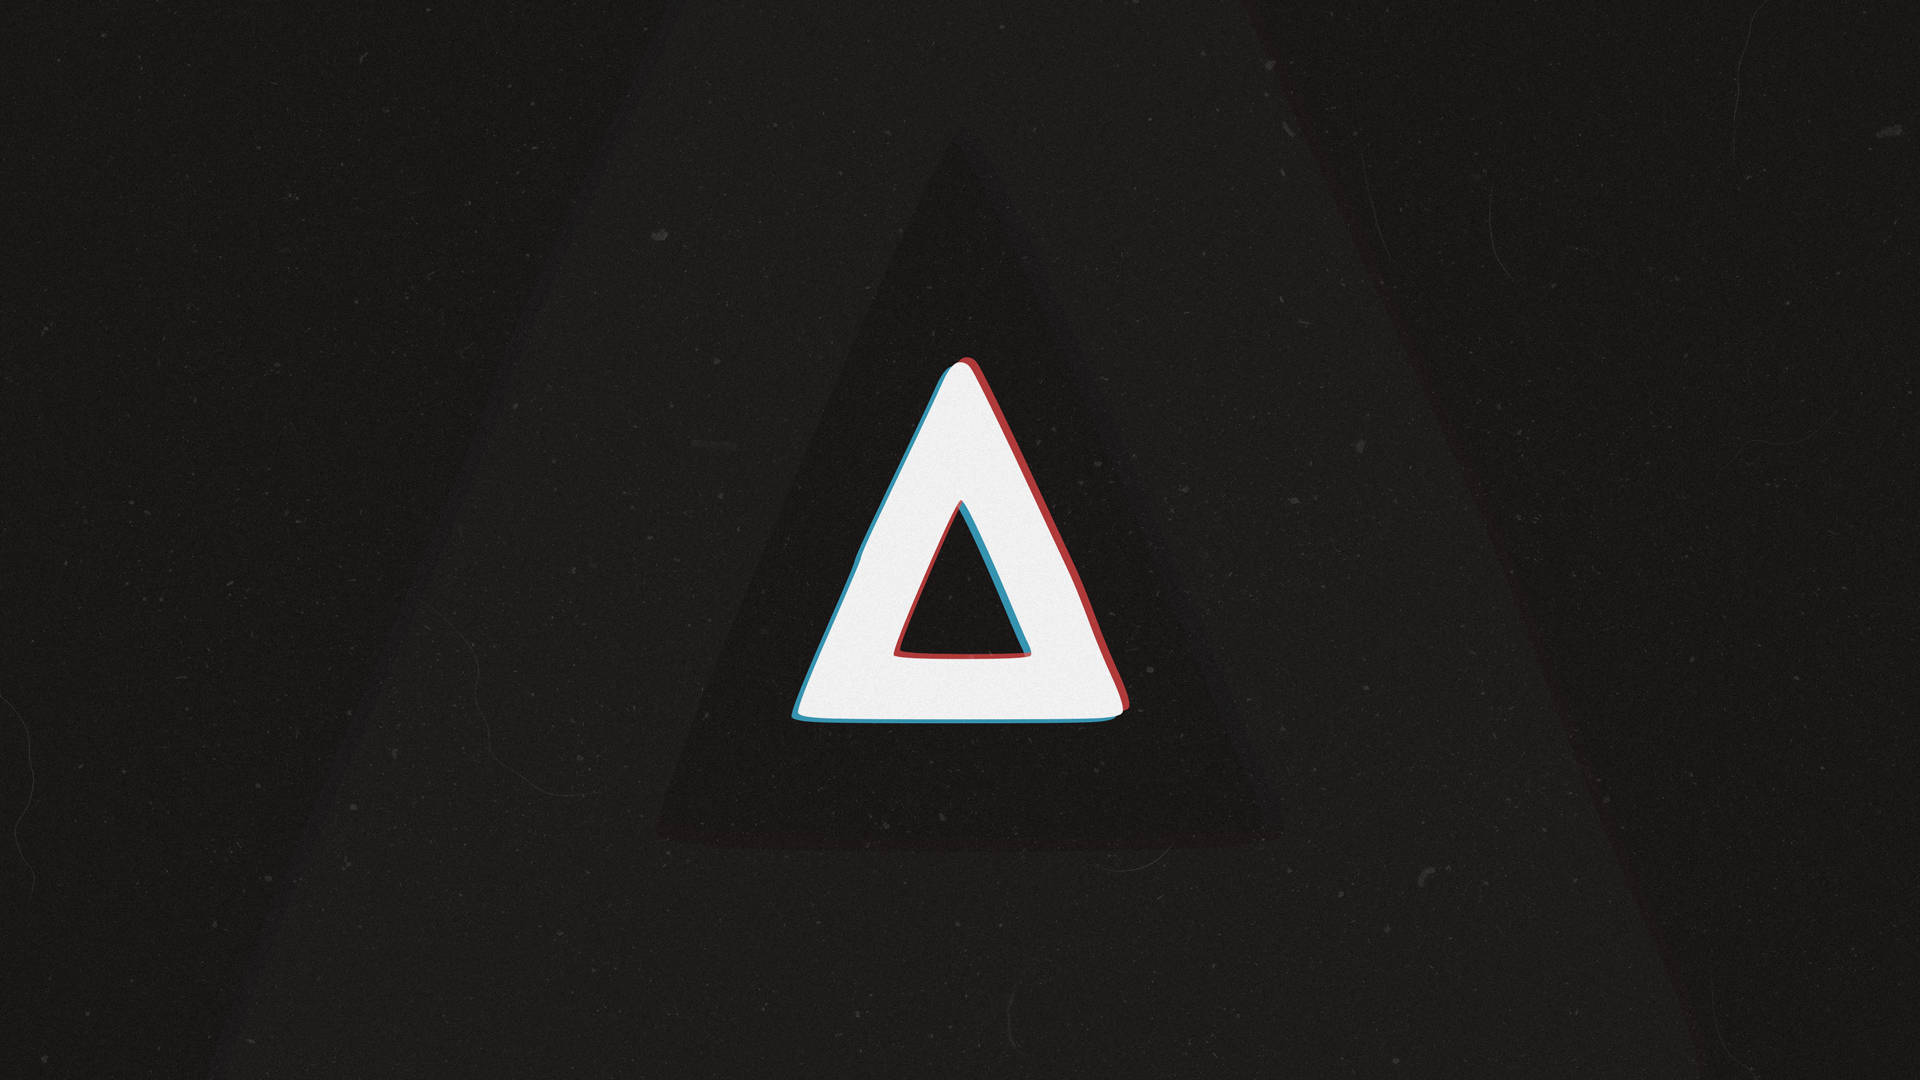 Bastille Band's Iconic Triangle Logo